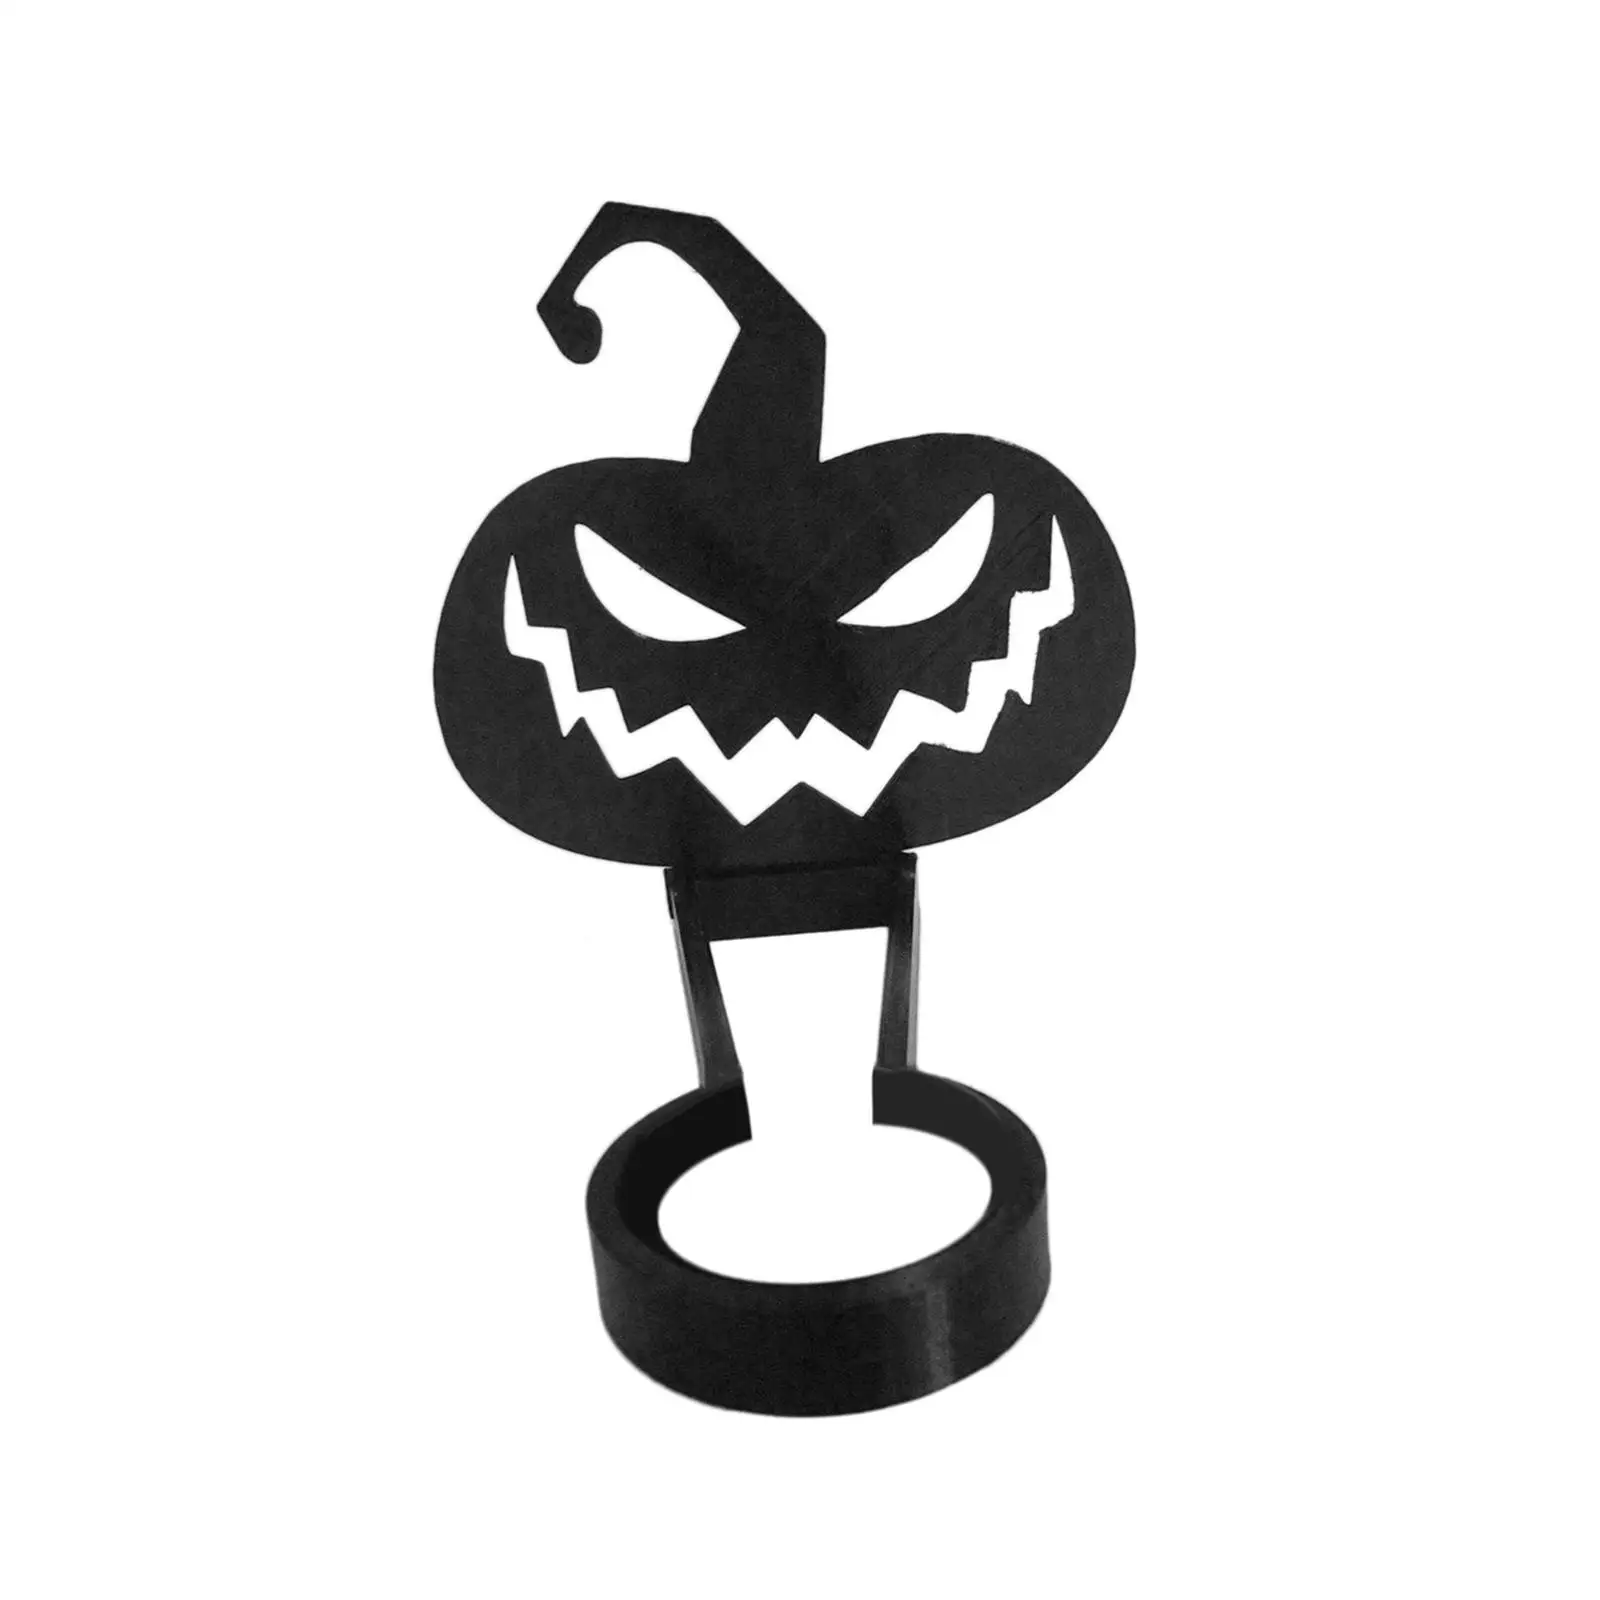 Silhouette Candle Holder Artwork Ornament Multipurpose Halloween Horror